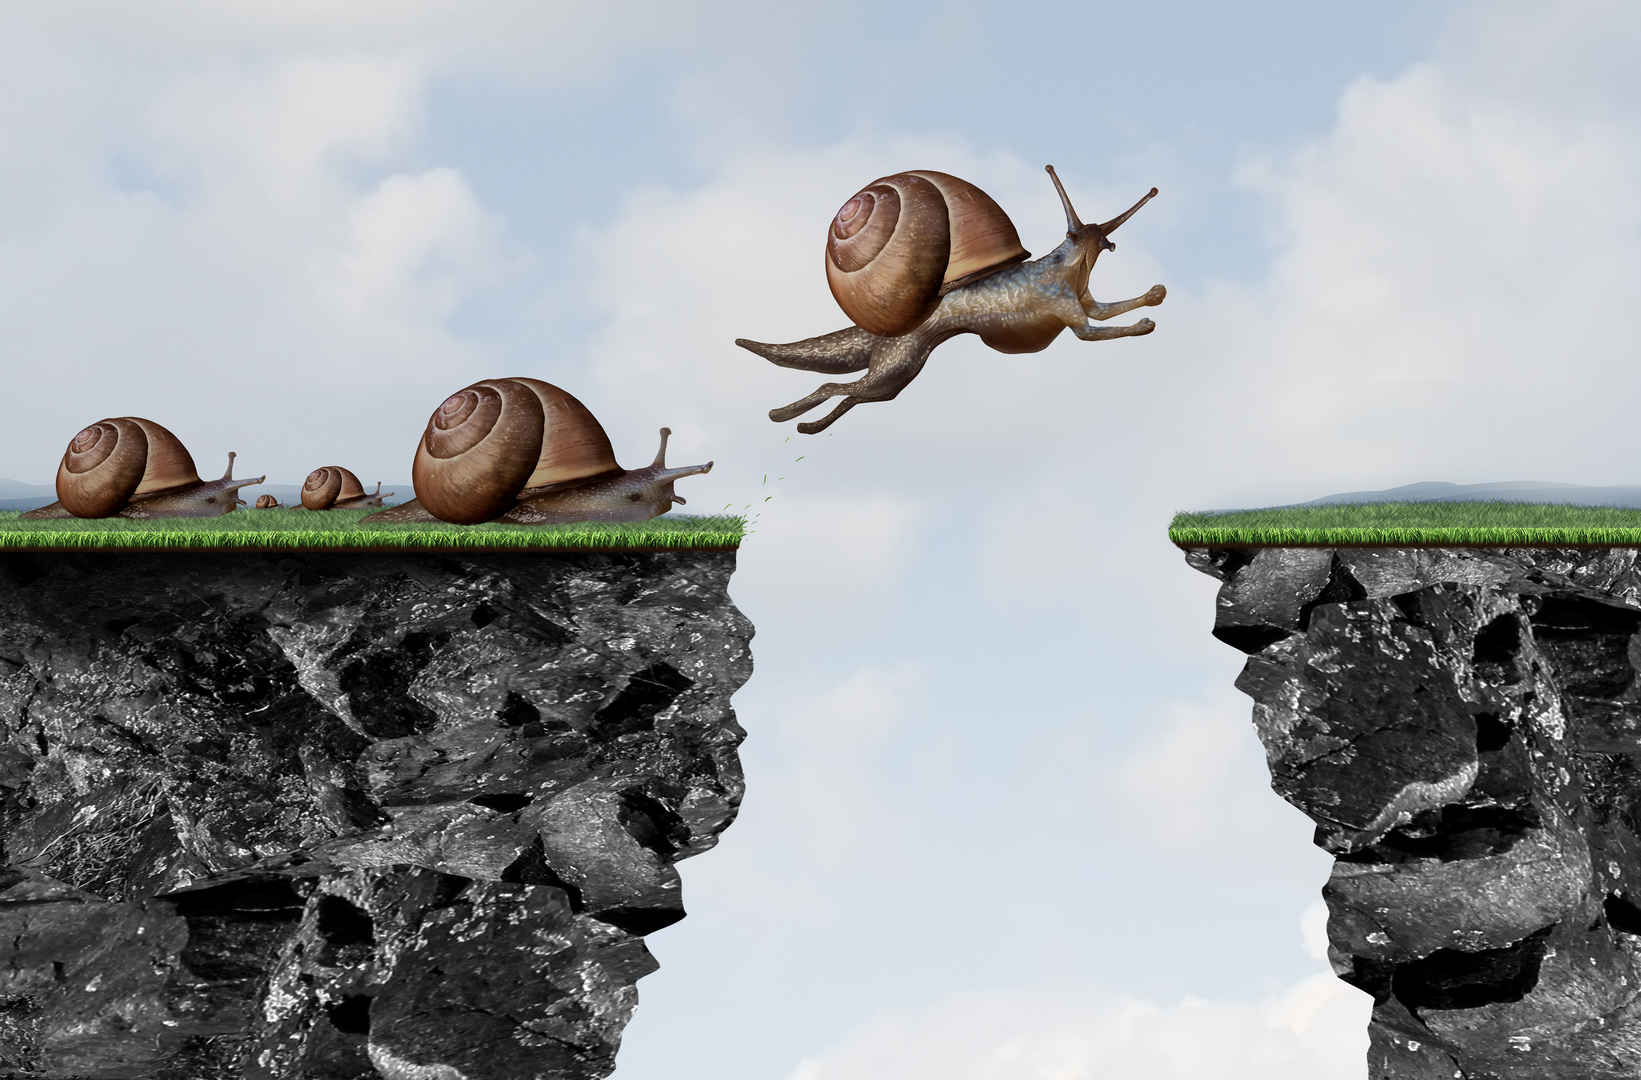 改变想法蜗牛跳过悬崖创新图-